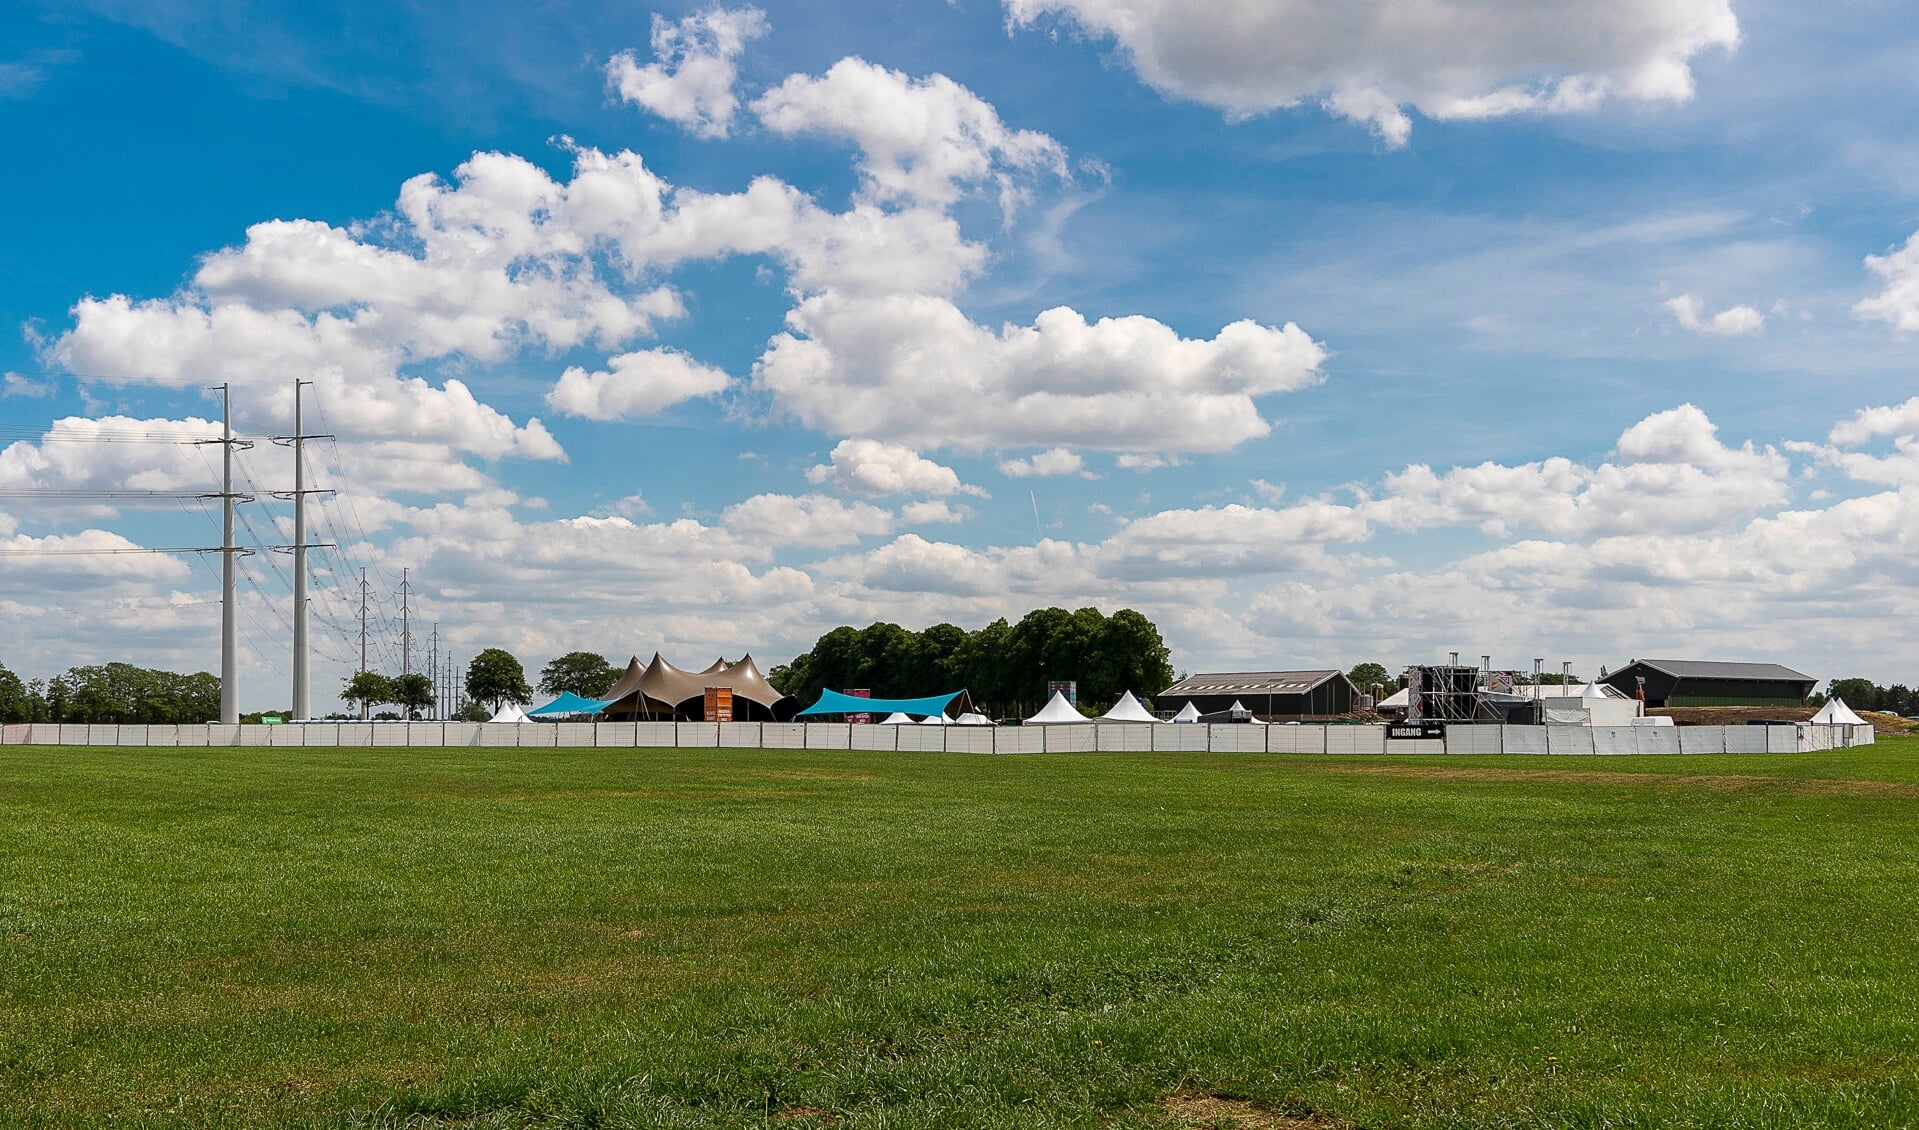 Dit jaar geen tenten in de wei voor Hemelvaartfeesten. Foto: Henk van Raaij